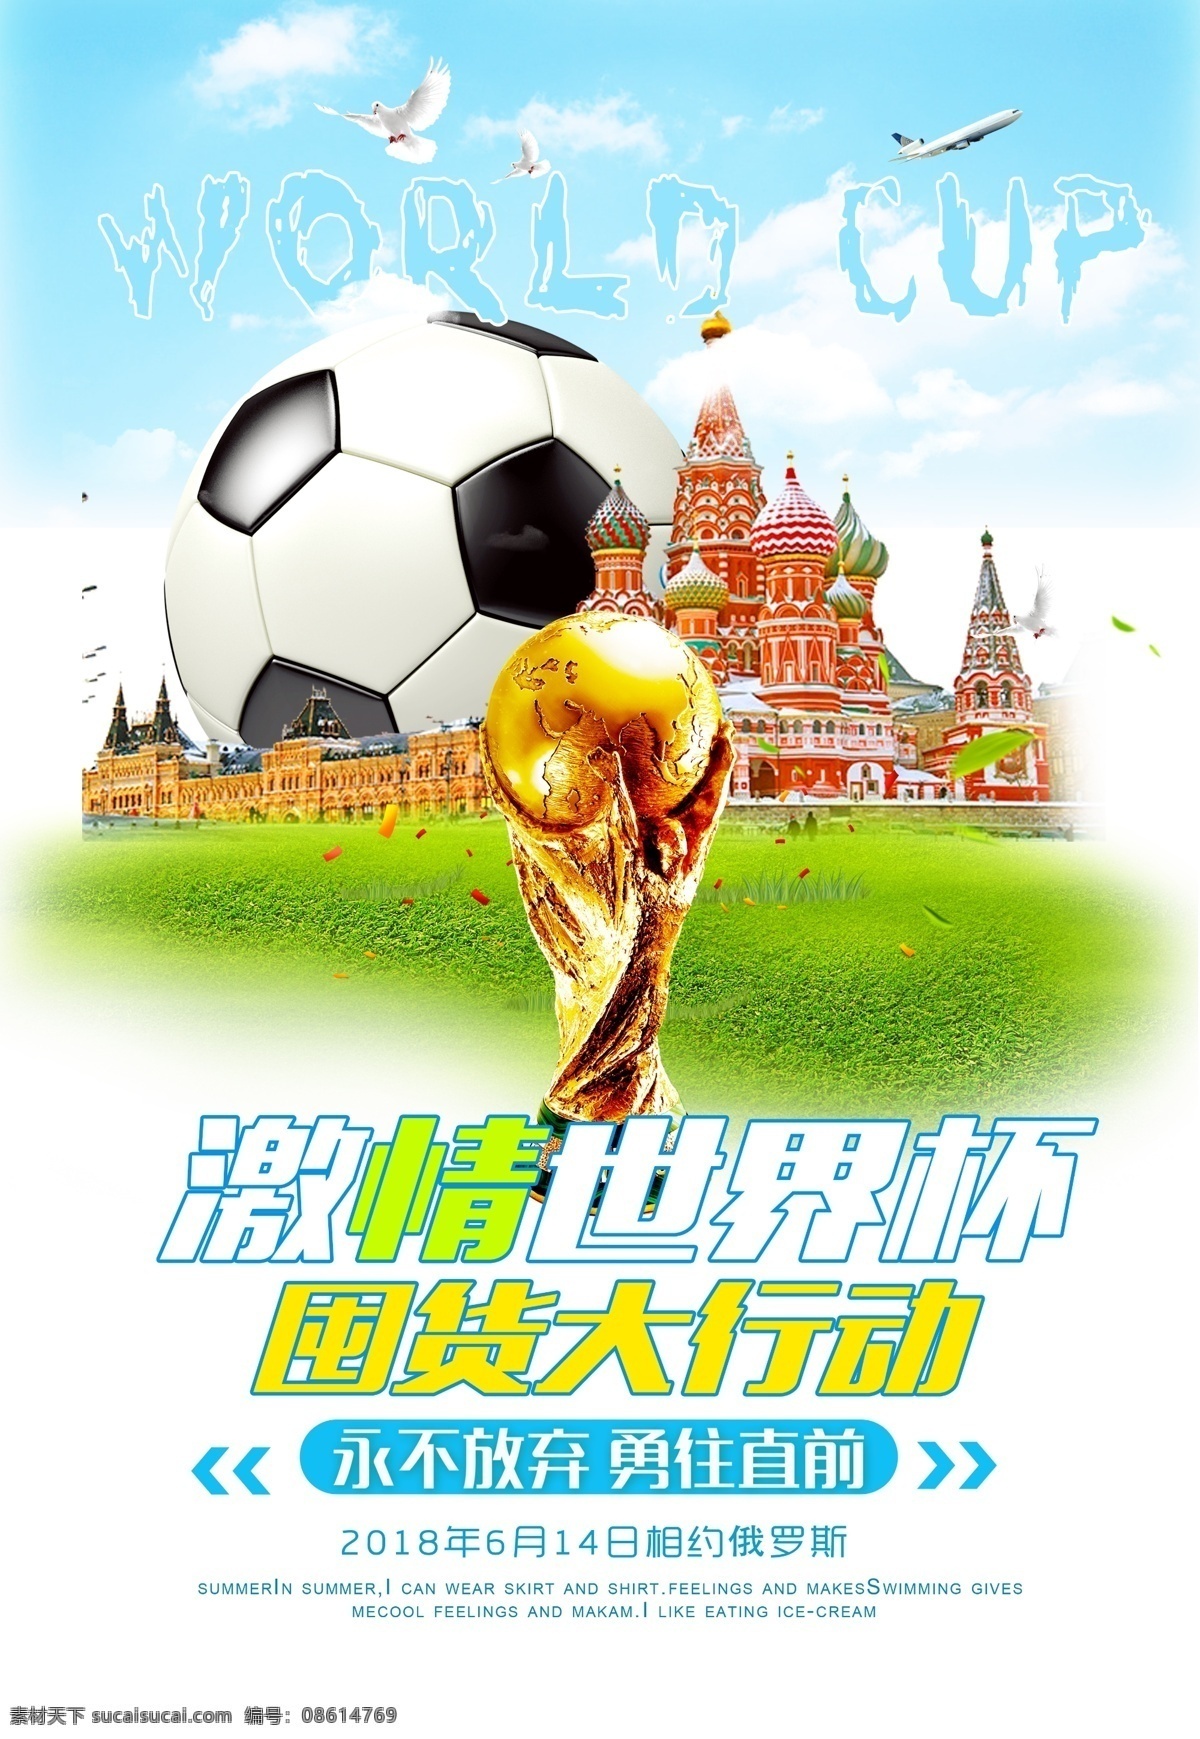 世界杯 体育 竞技 海报 运动 足球 世界杯素材 商城促销 世界杯活动 足球夜